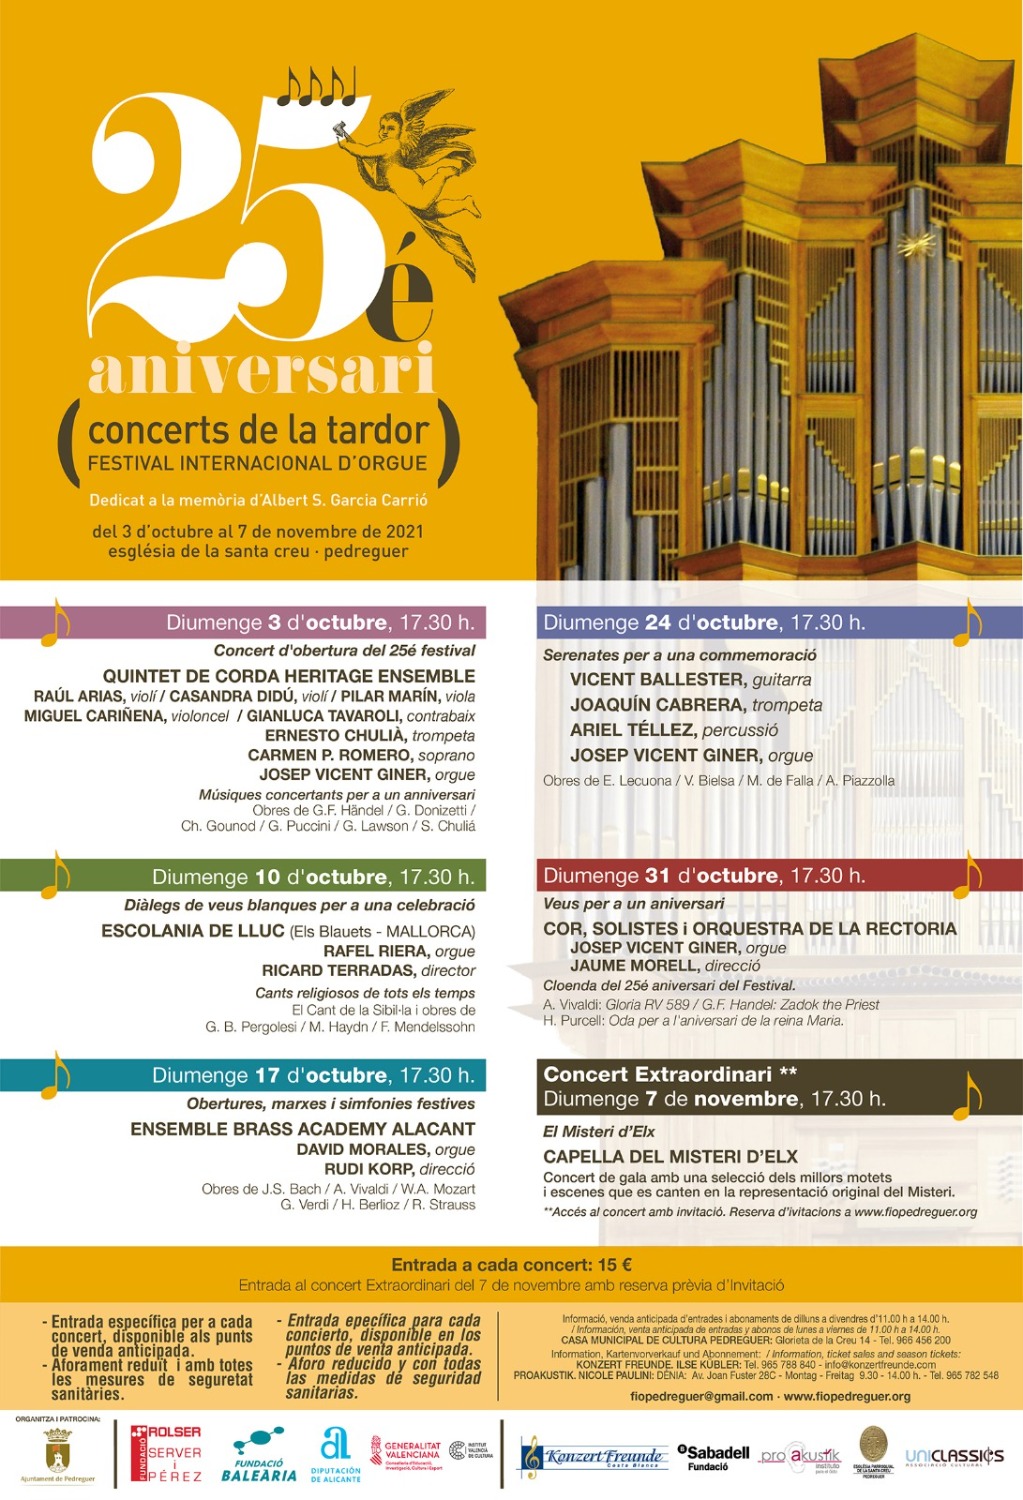 El Festival Internacional de Órgano de Pedreguer celebra su 25 aniversario